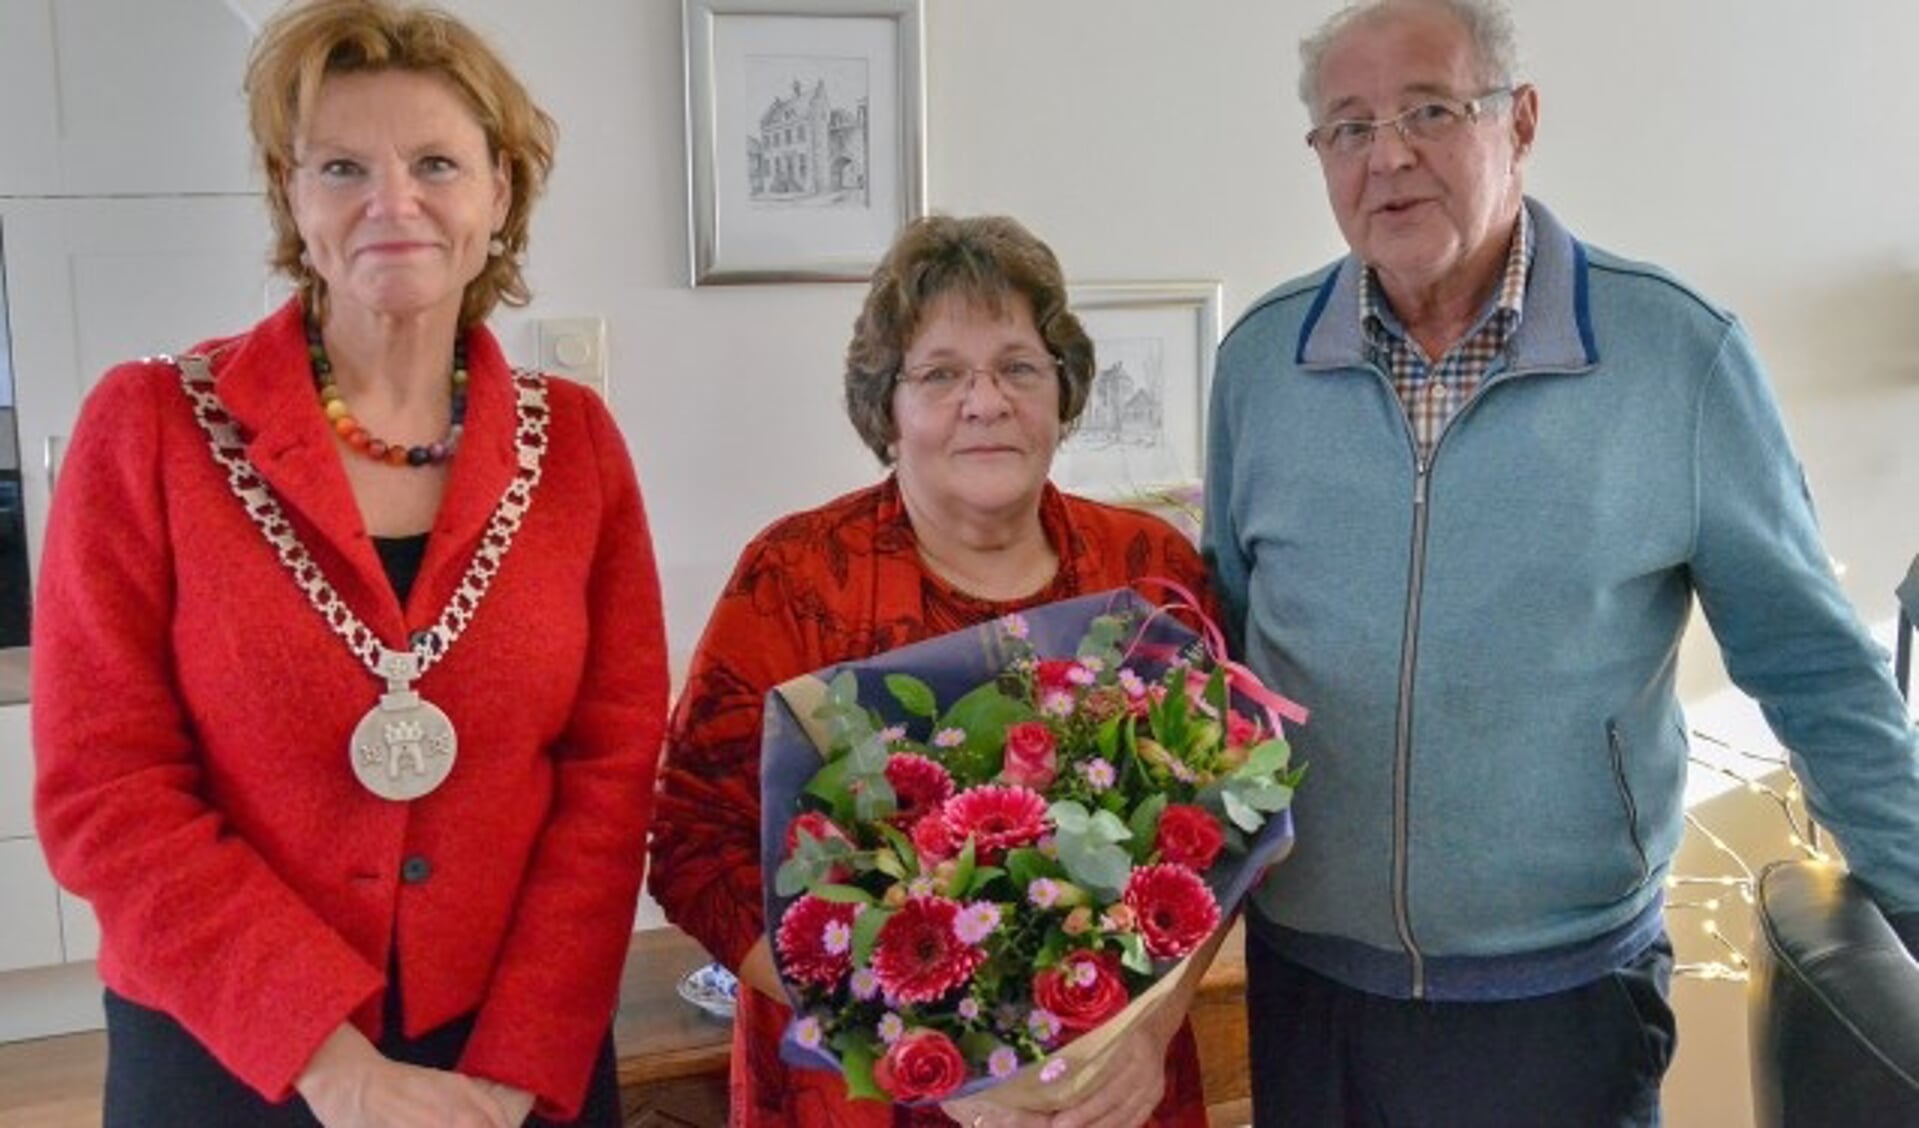 Burgemeester Petra van Hartskamp kwam donderdagmorgen Nel en Jan van der Klij-den Besten namens de gemeente feliciteren met hun gouden huwelijk. (Foto: Paul van den Dungen)